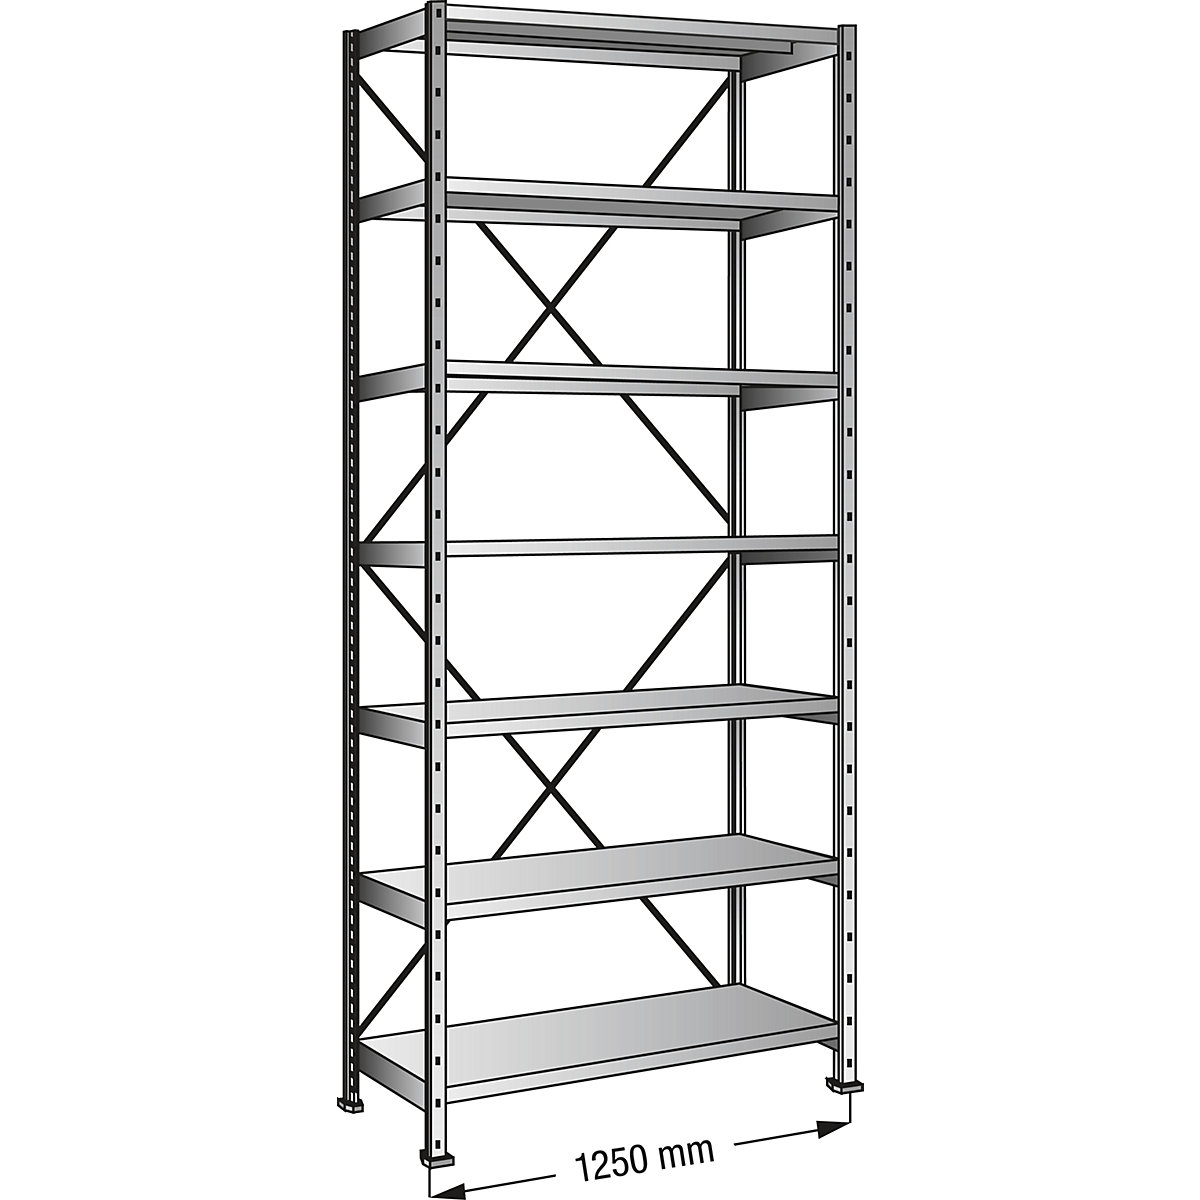 Boltless shelving unit, zinc plated, 7 shelves, height 2640 mm, shelf width 1200 mm, depth 800 mm, standard shelf unit